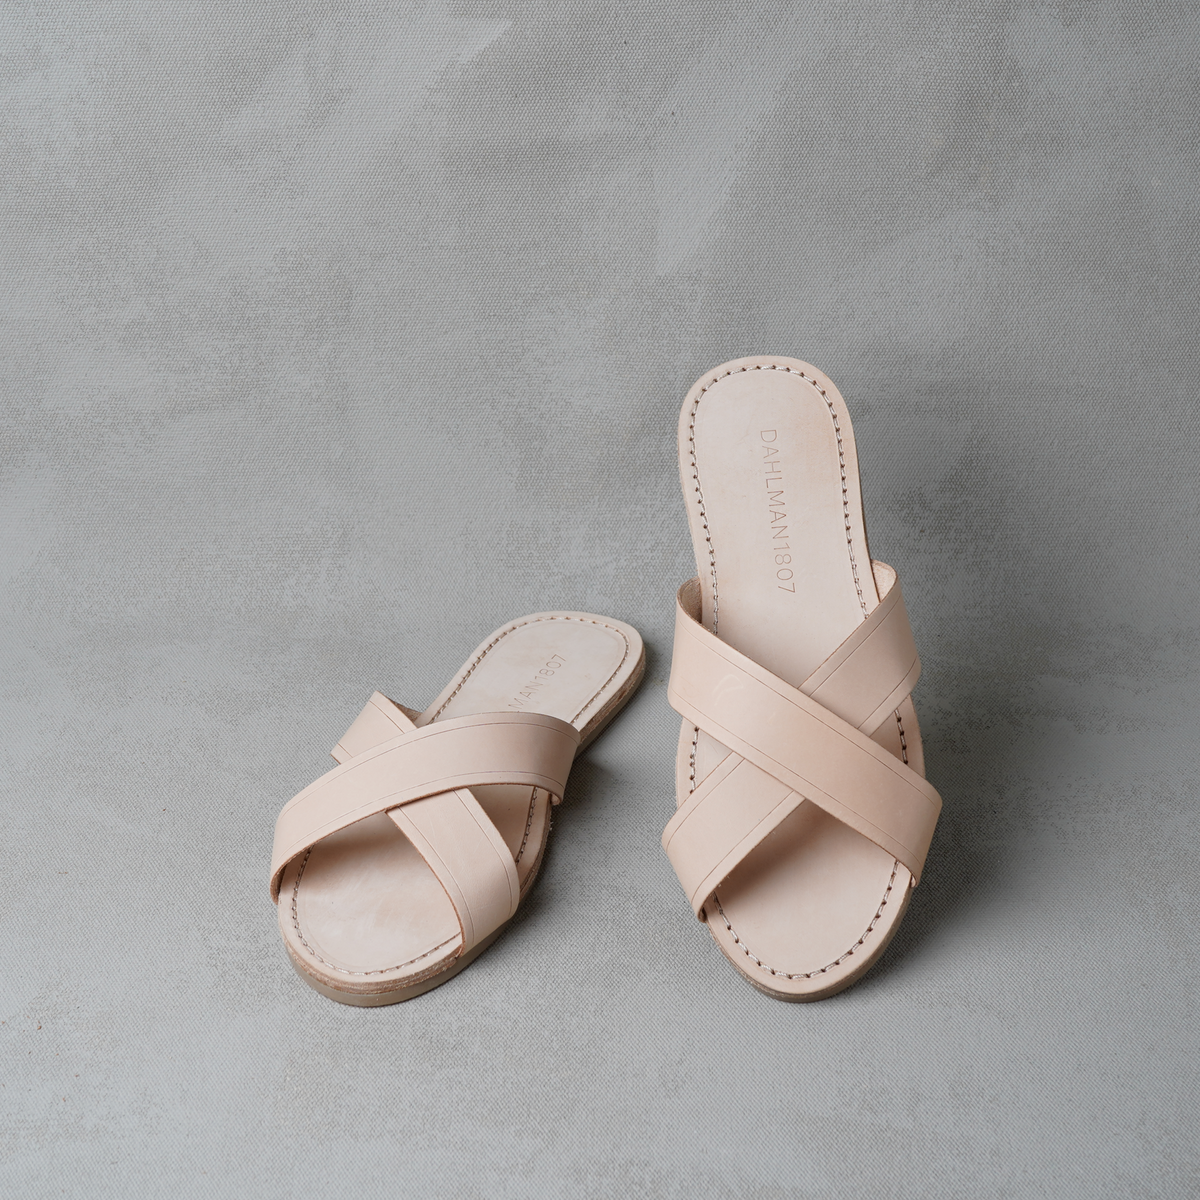 The Dahlman Women's Sandal, Tan